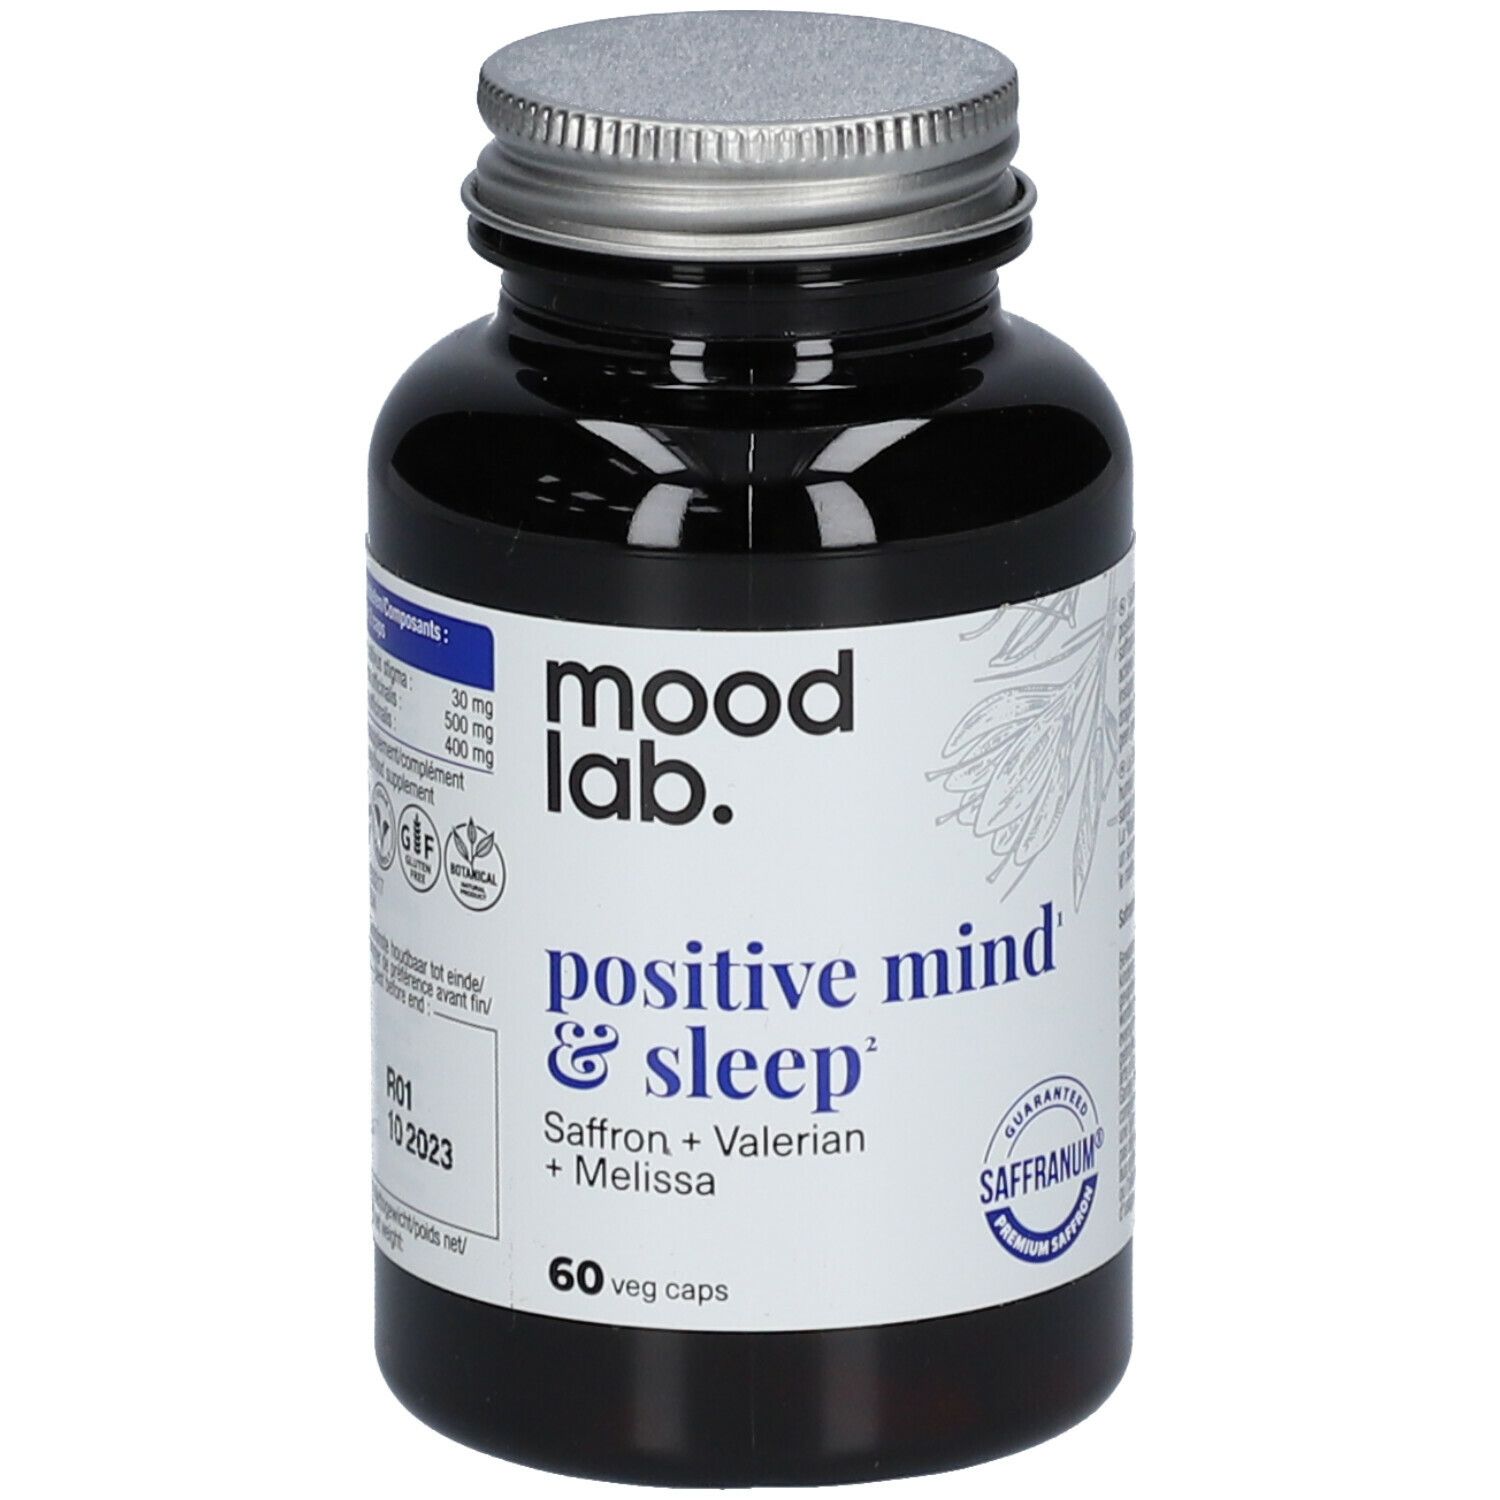 Moodlab. Positive mind & sleep